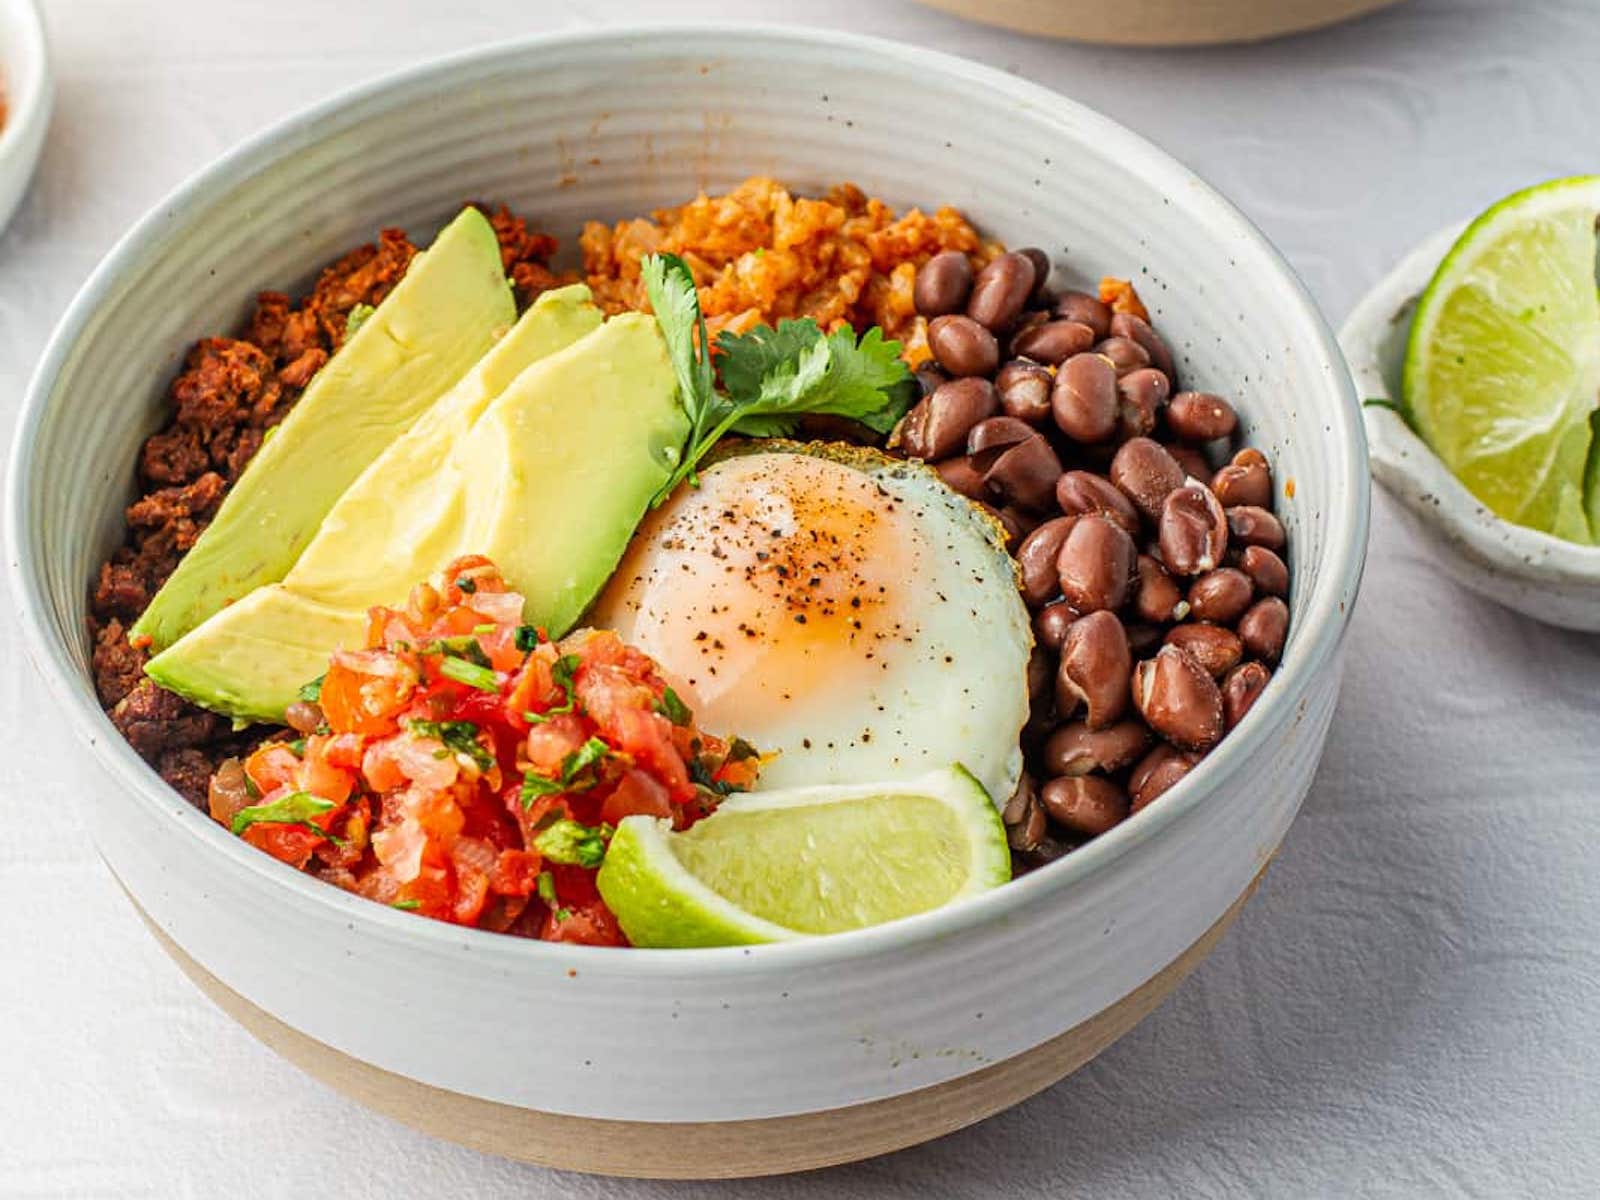 healthy breakfast burrito recipes: soyrizo bowl recipe 